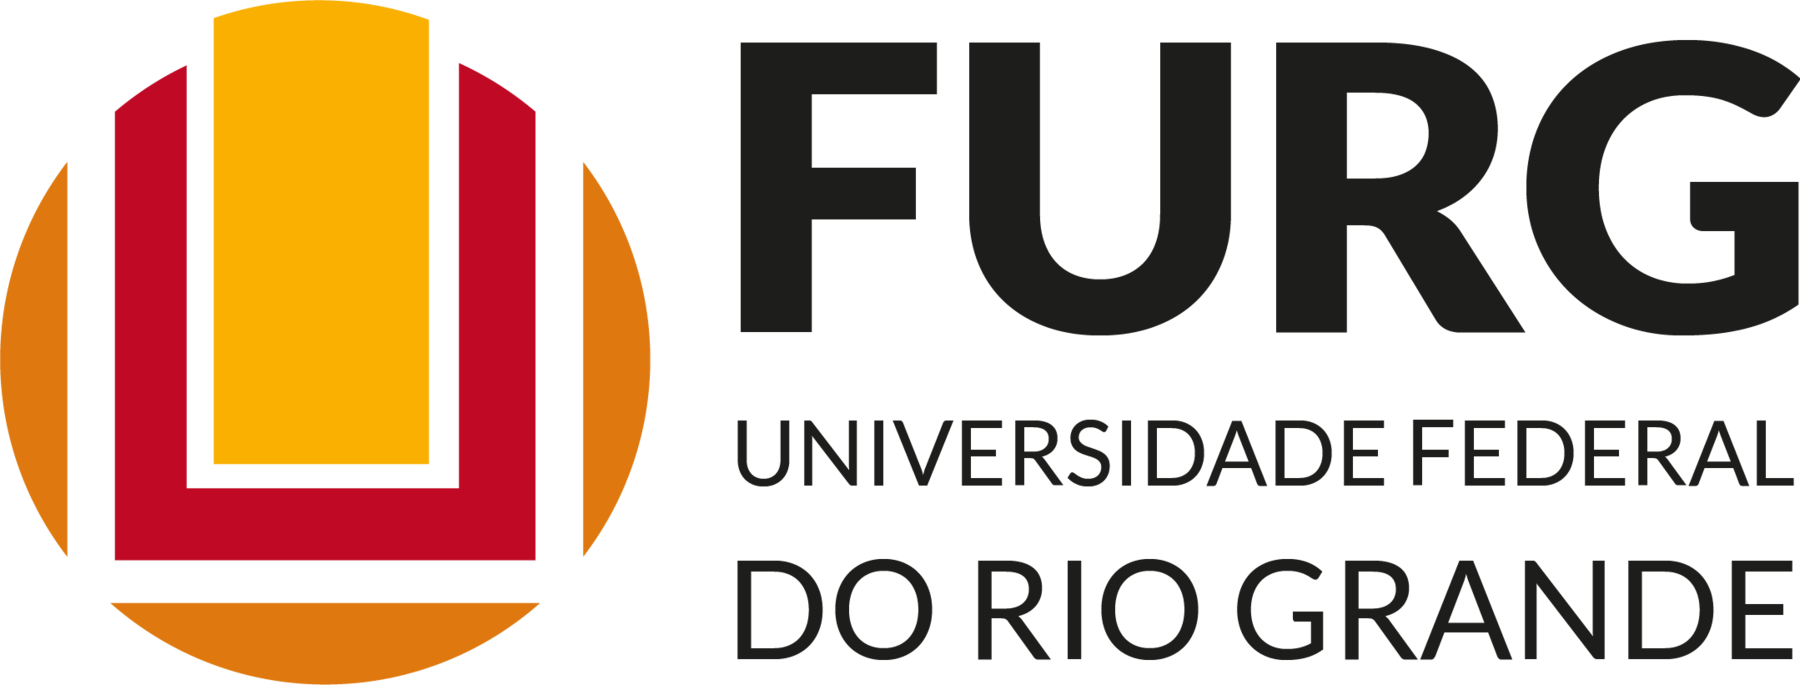 Logo FURG